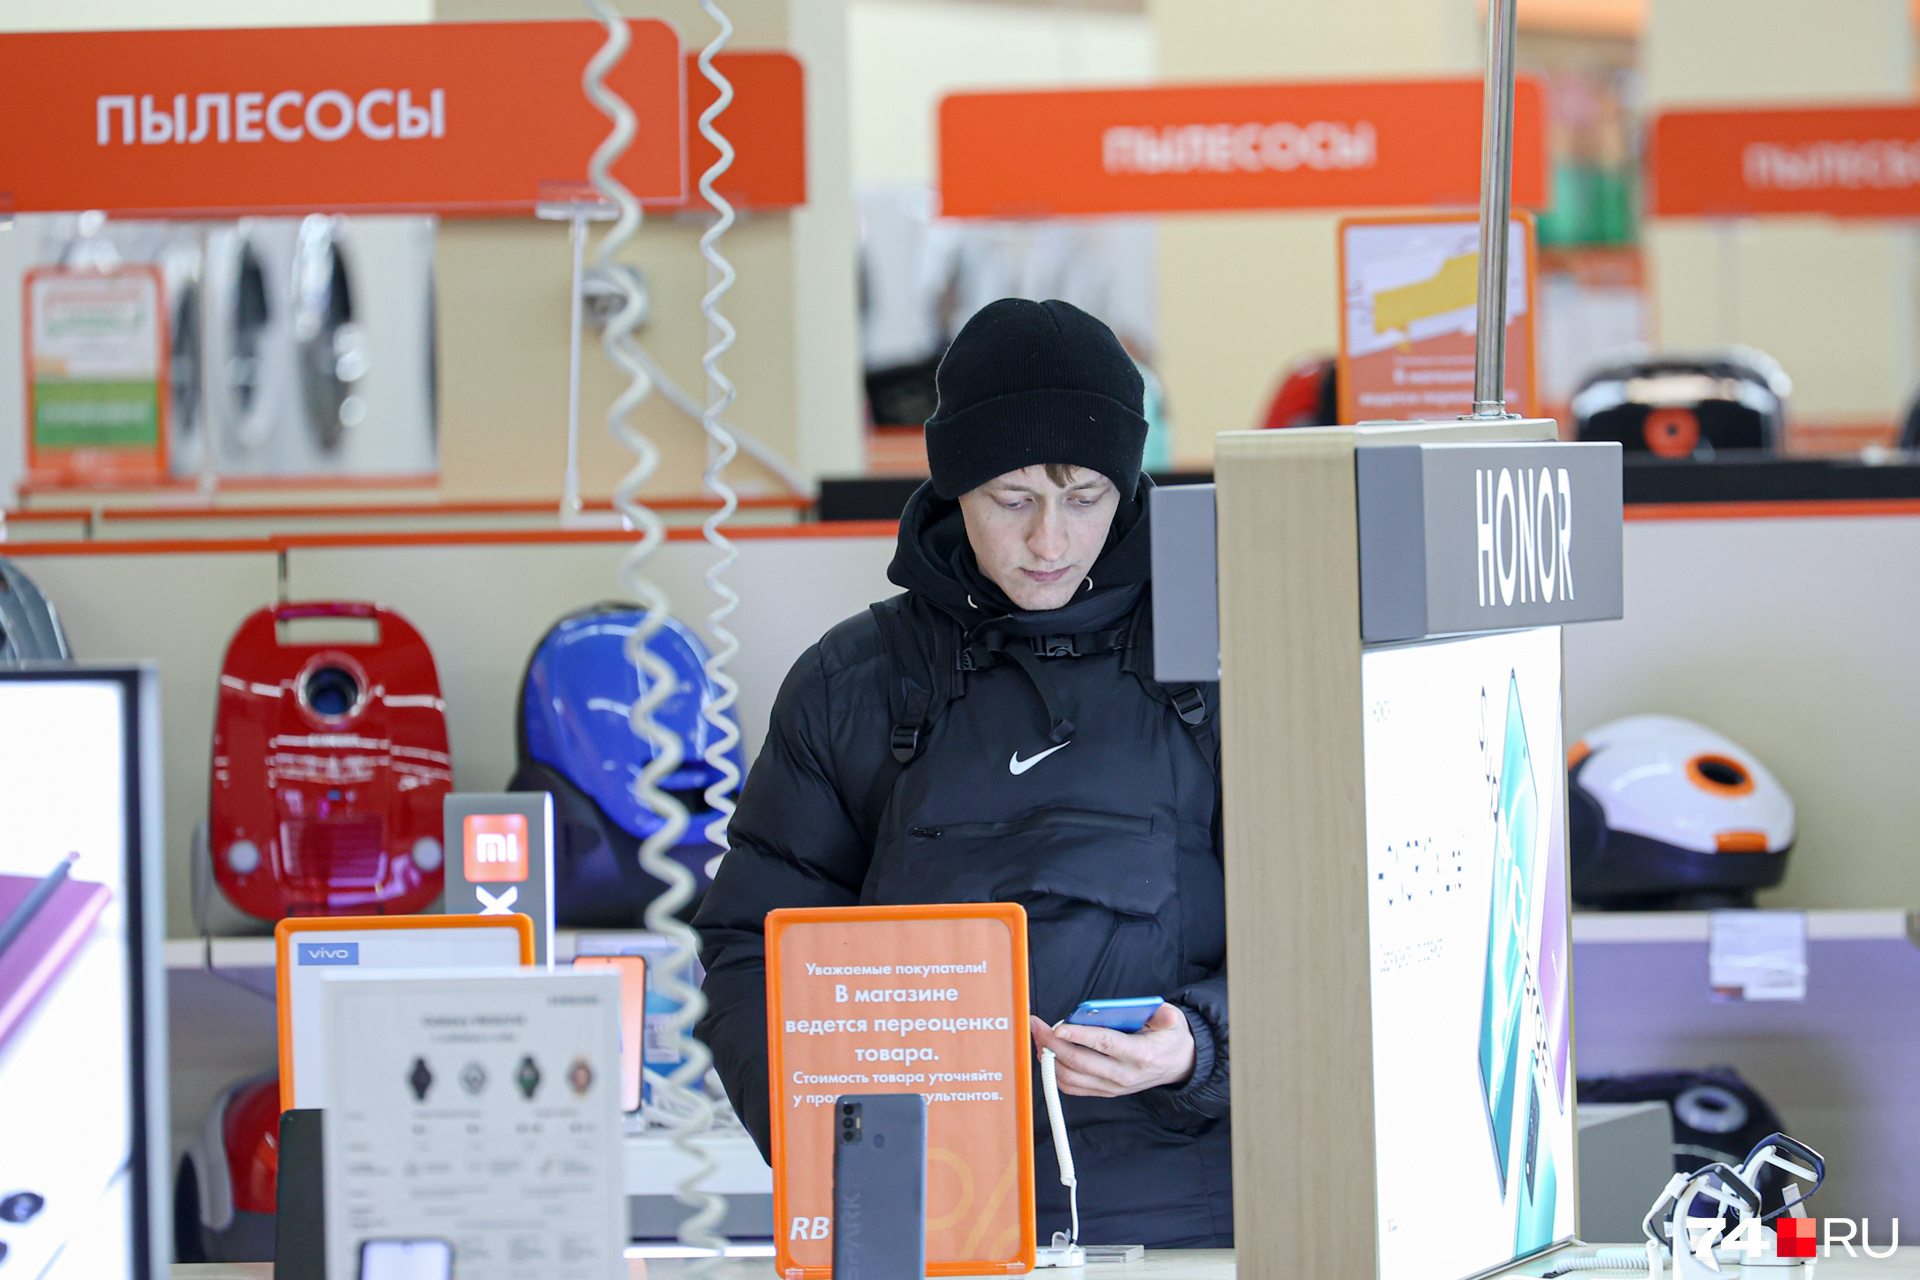 Директор магазина электроники в Забайкалье обворовала свой магазин ради ставок на спорт